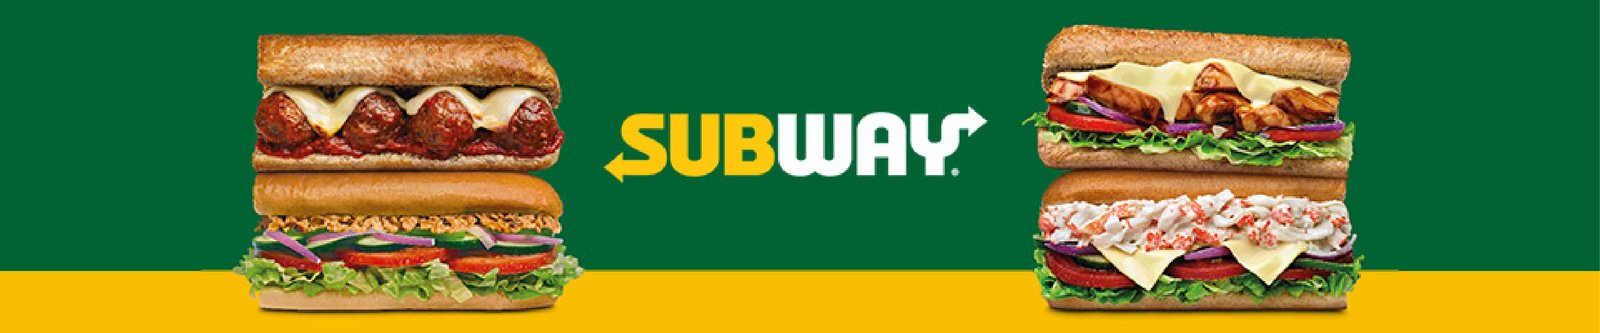 subway franchise